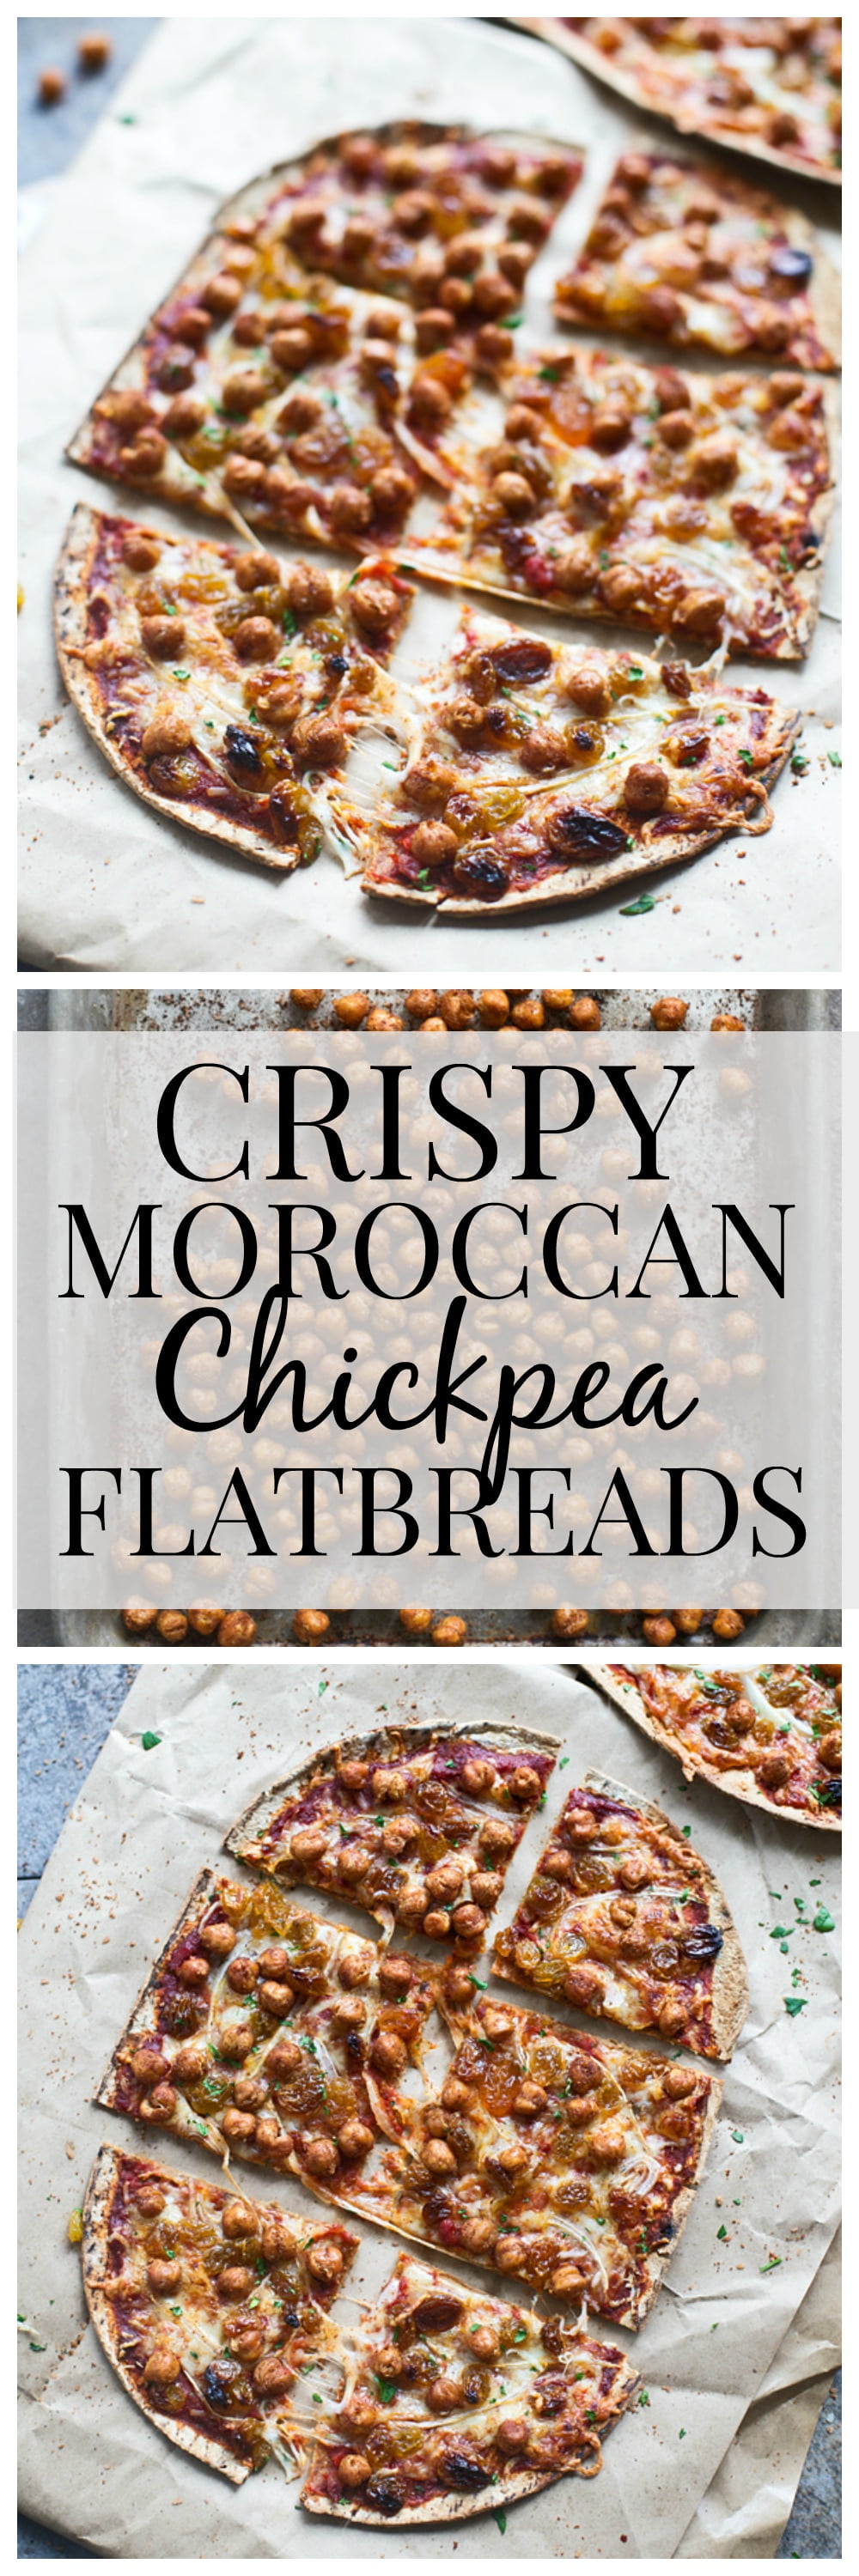 Crispy Moroccan Chickpea Flatbreads